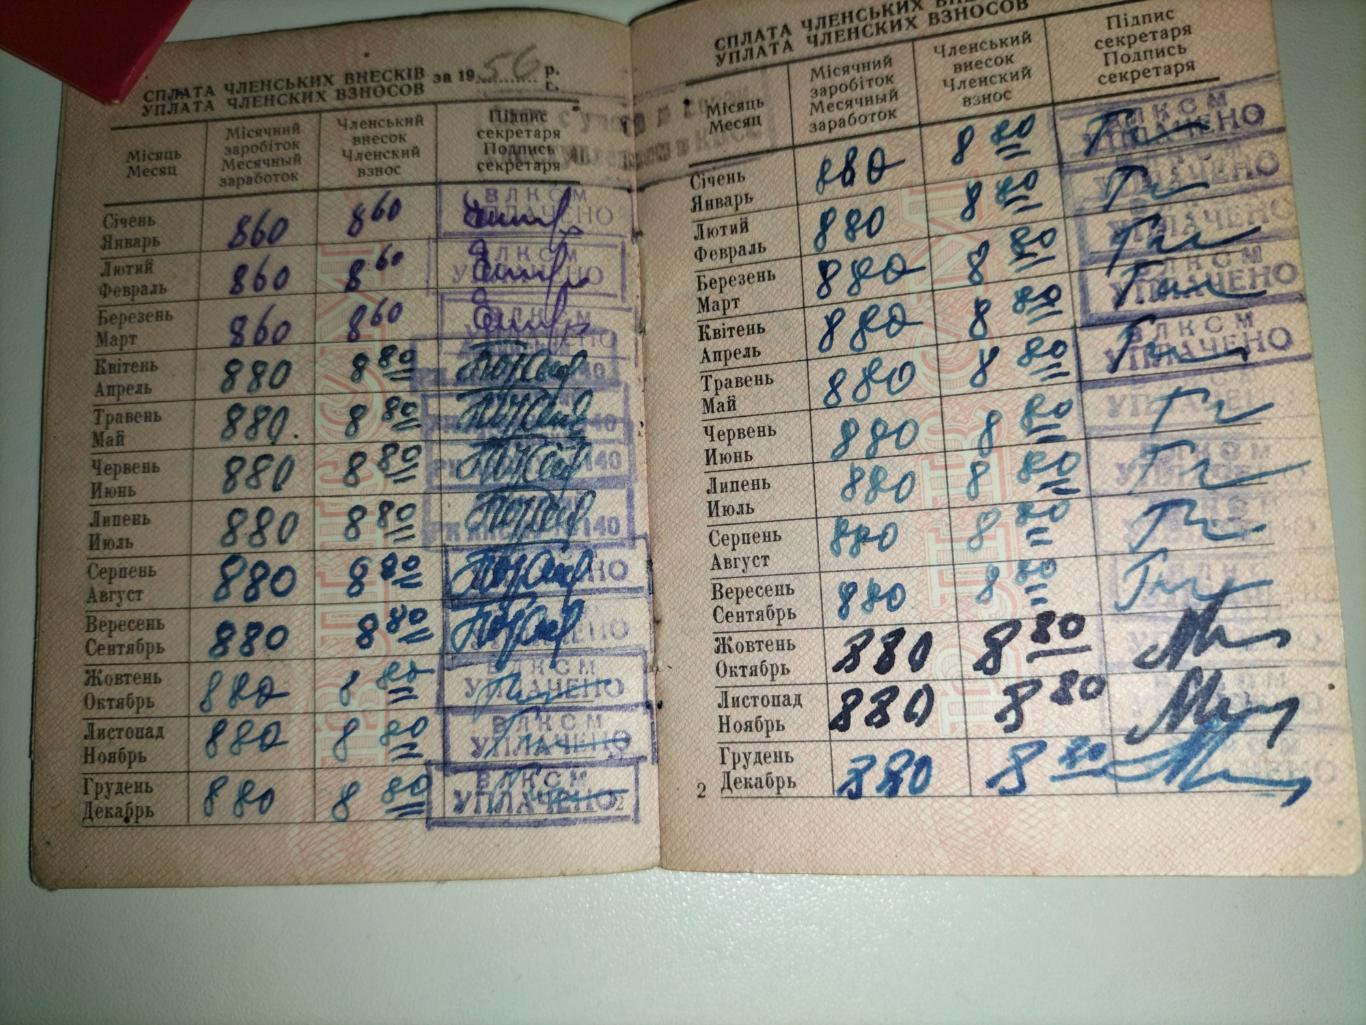 Комсомольский билет 1956 год 2